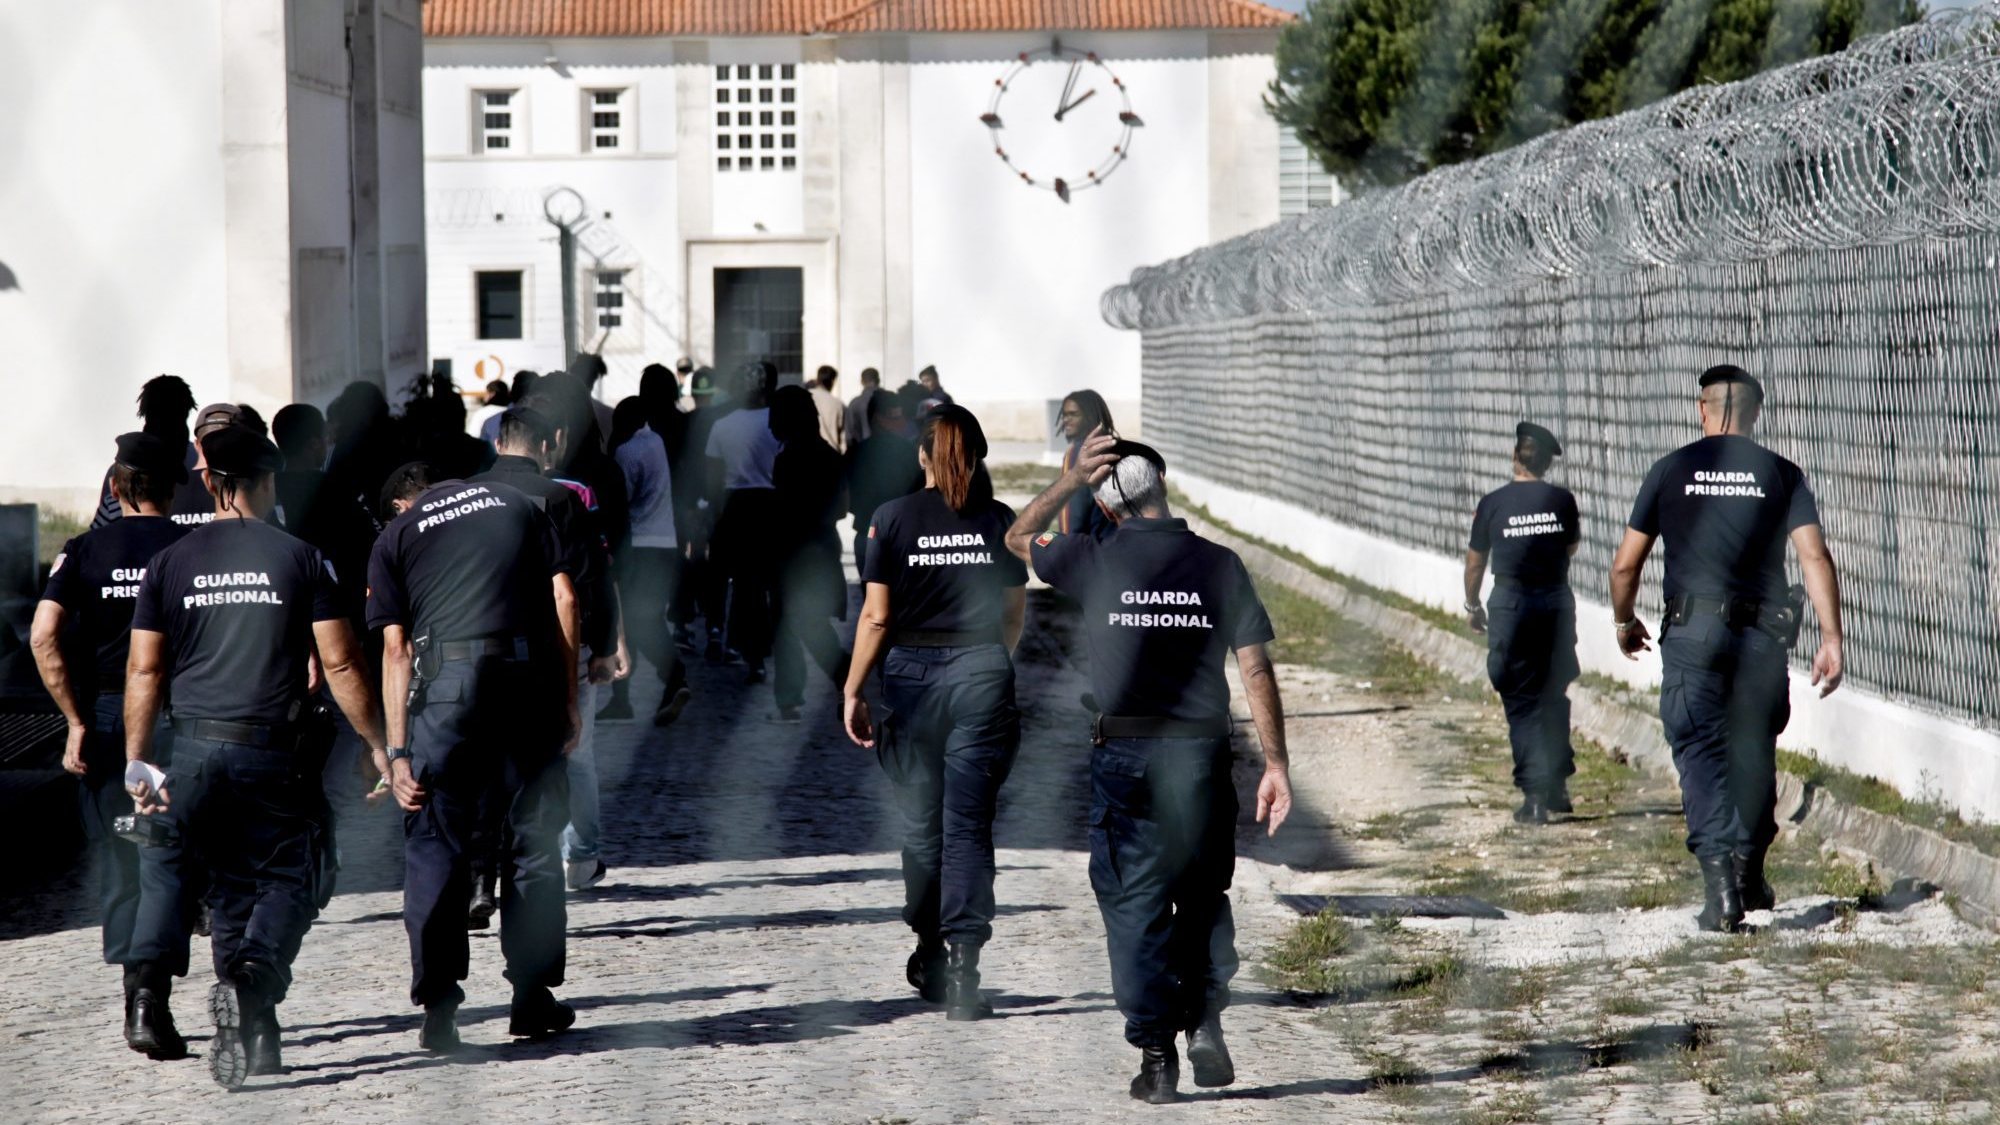 O Sindicato Nacional do Corpo da Guarda Prisional disse que já houve oito agressões a guardas na prisão do Linhó desde o início do ano